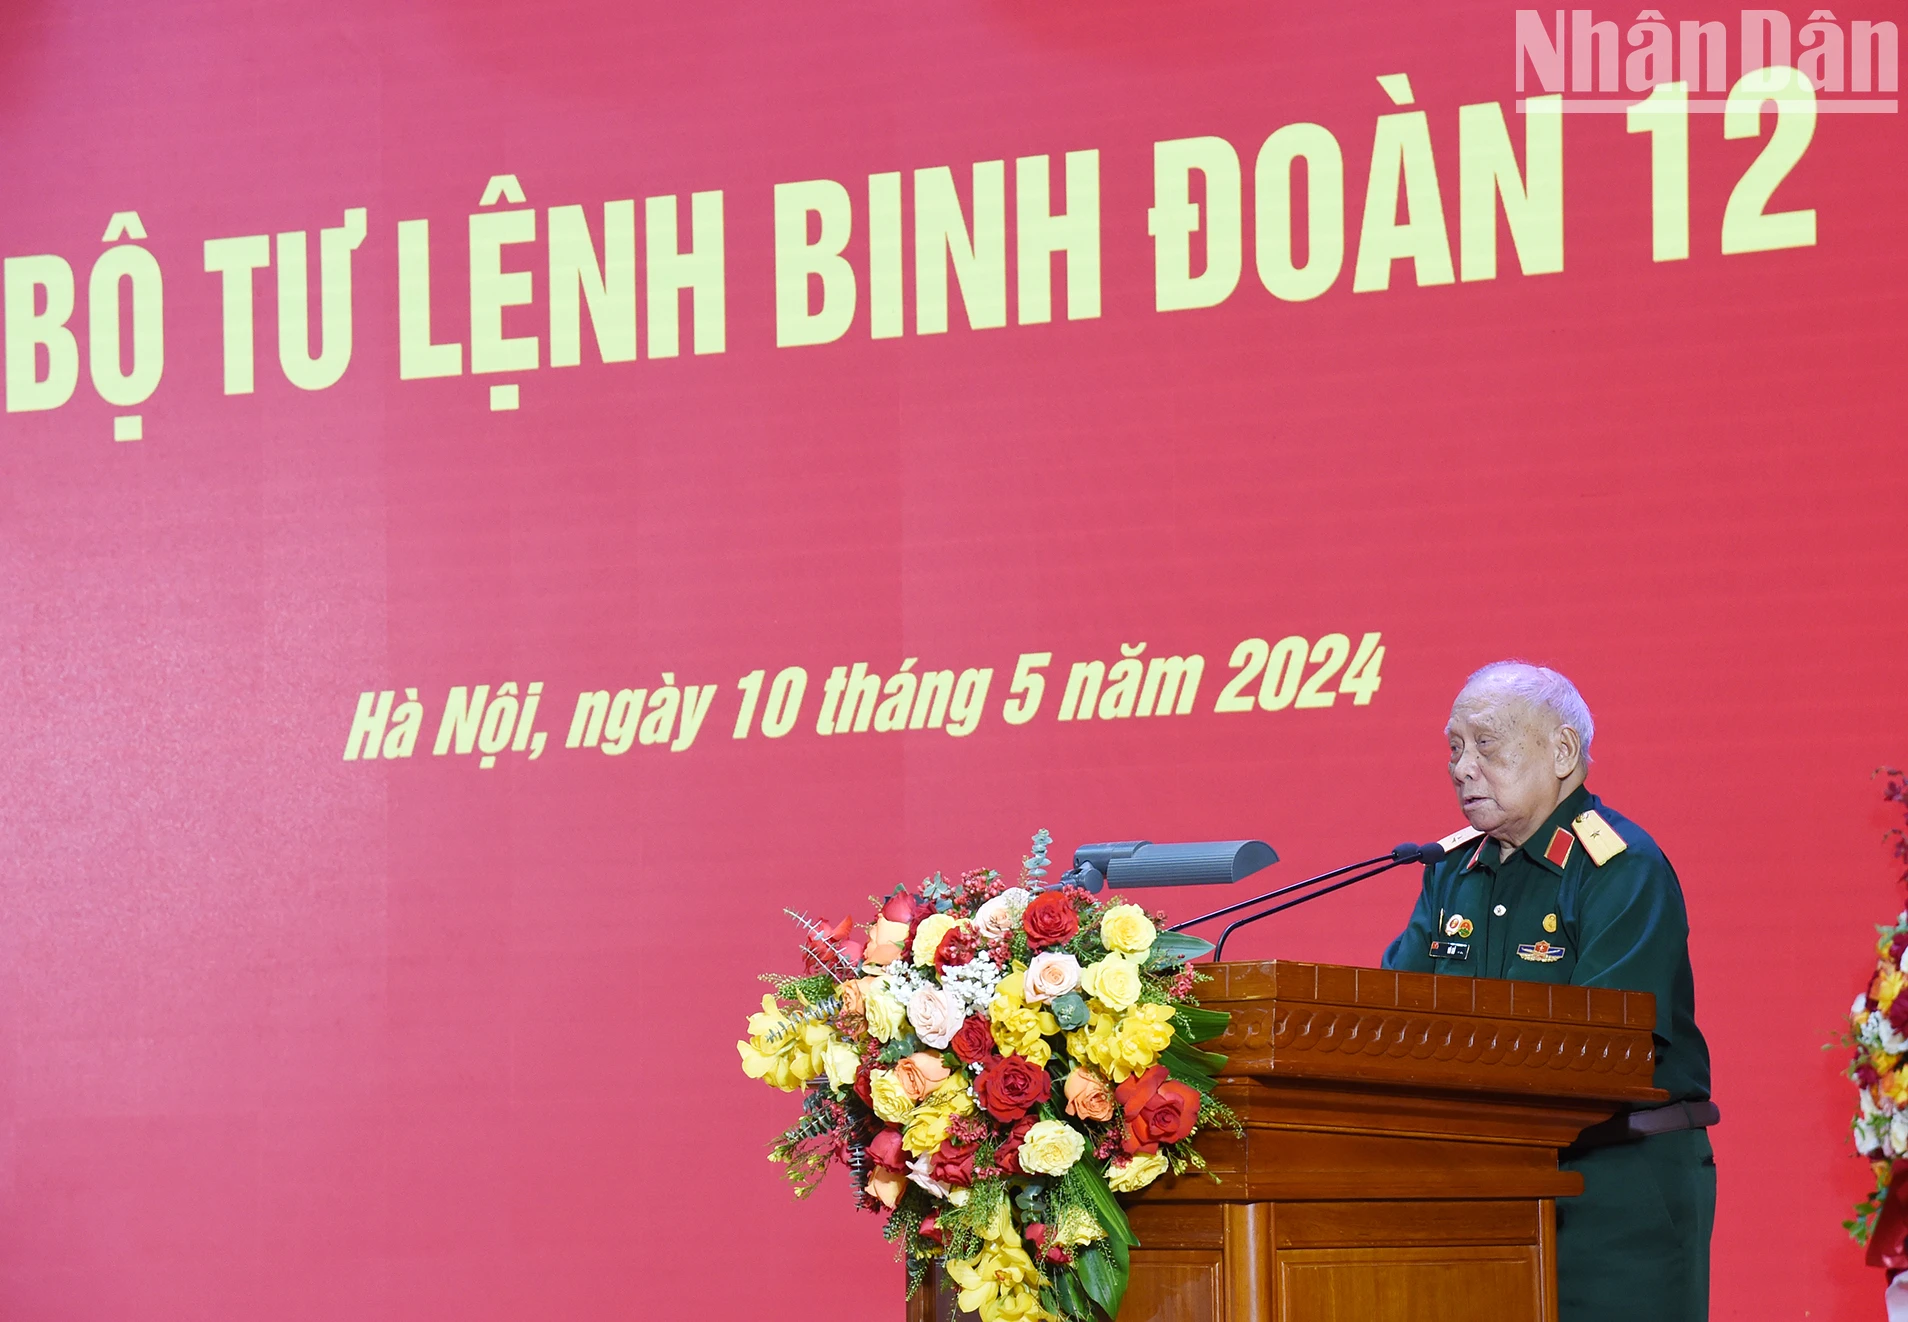 [Ảnh] Thủ tướng Phạm Minh Chính thăm và làm việc tại Binh đoàn 12 ảnh 8